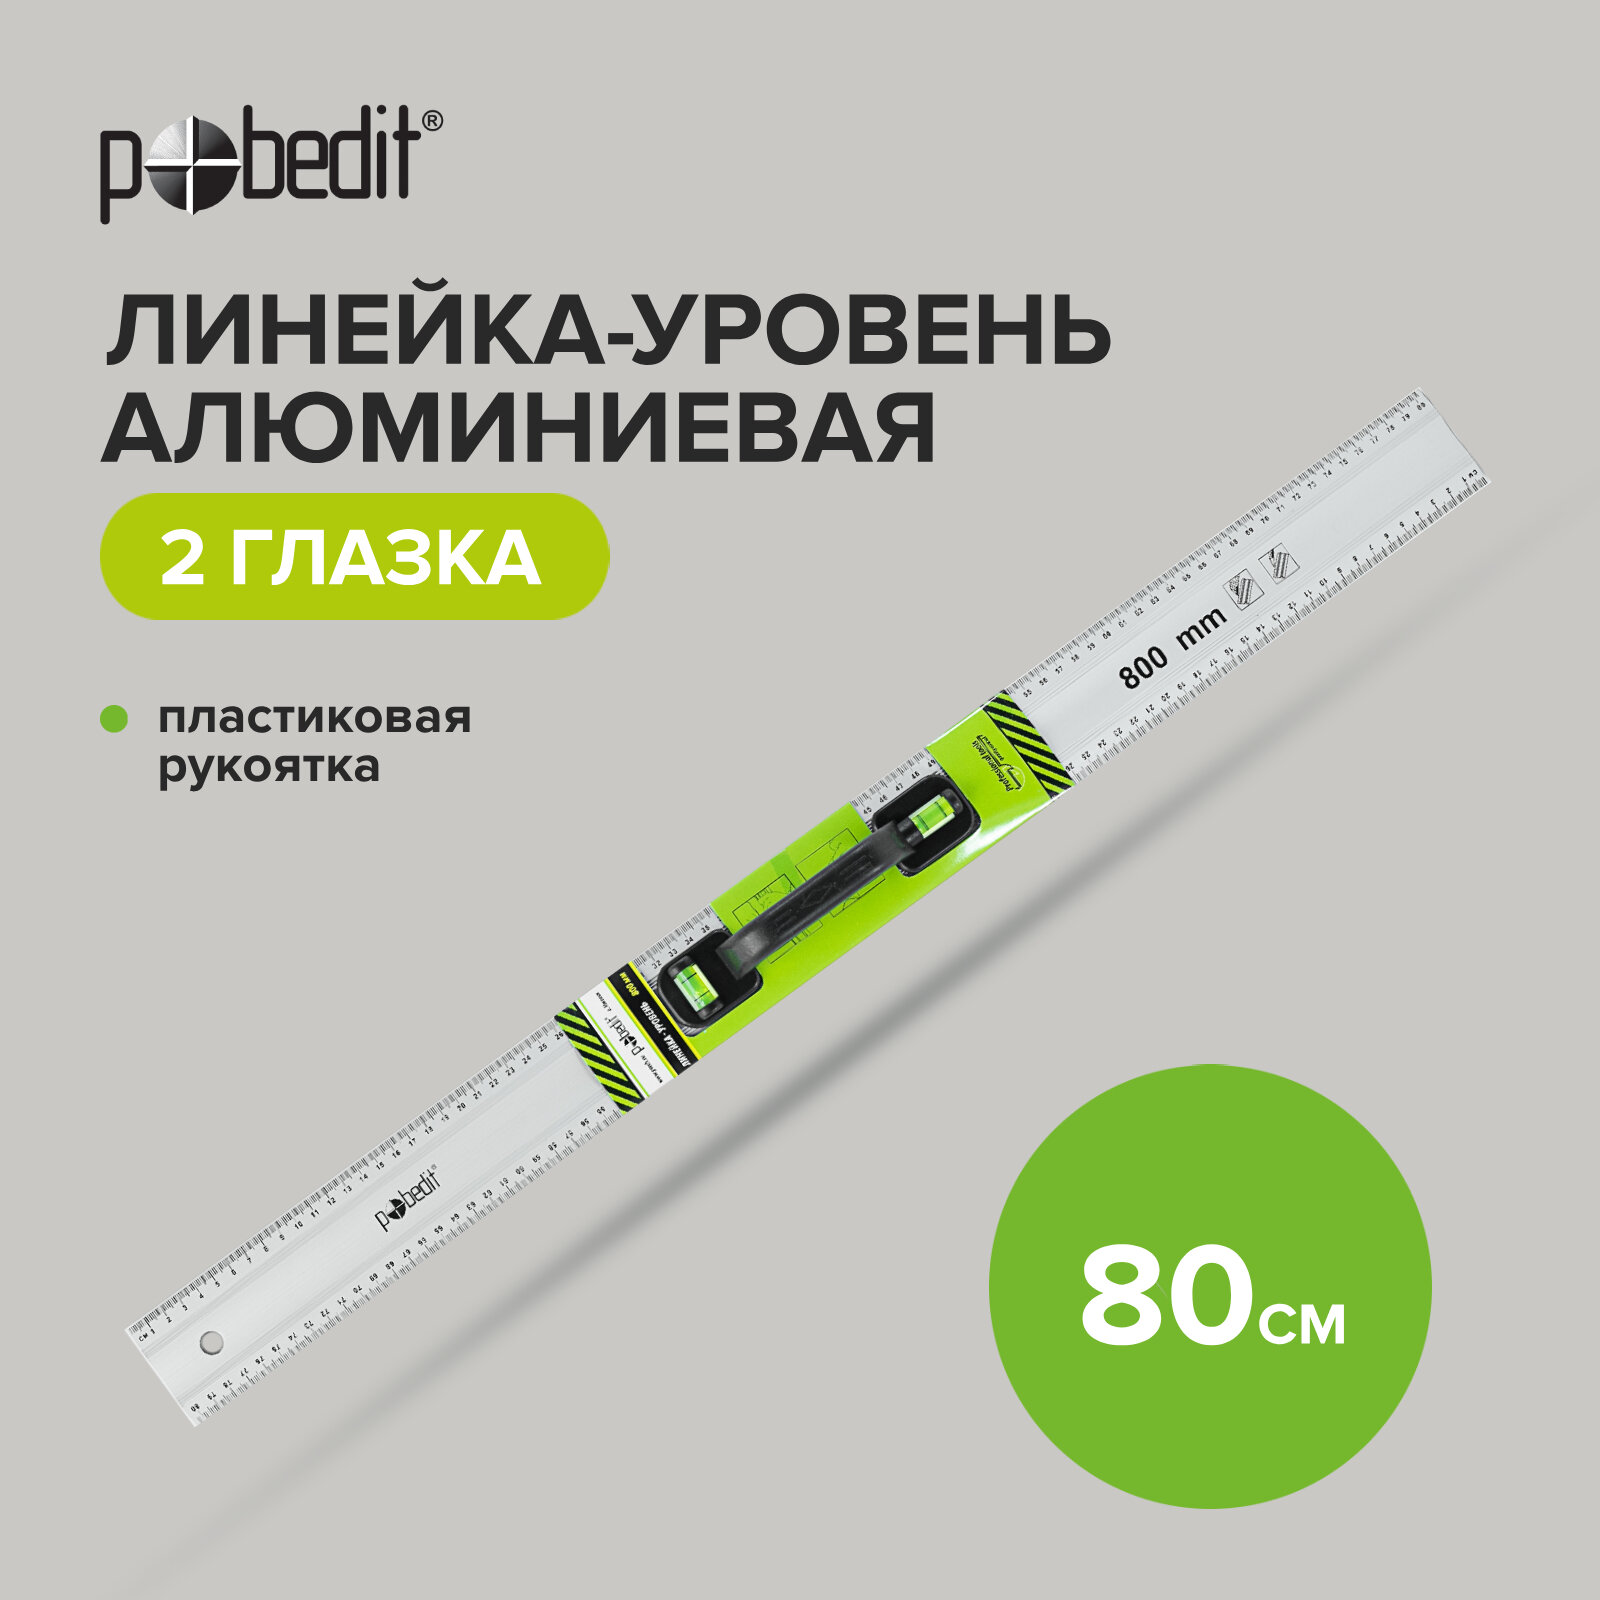 Линейка-уровень металлическая пластмассовая ручка 2 глазка 80 см, Pobedit